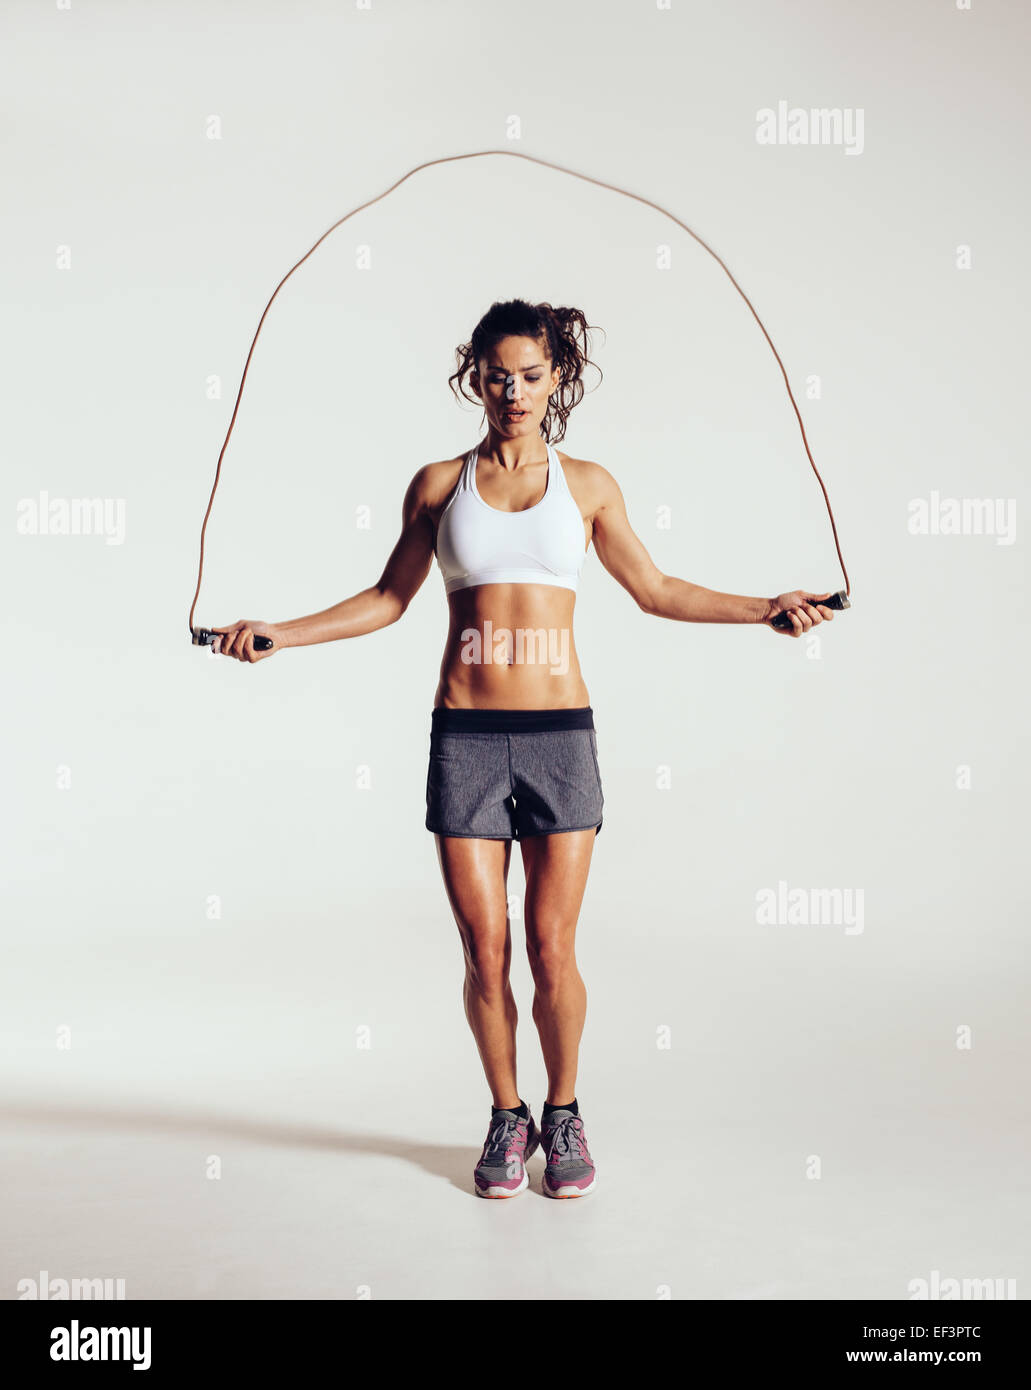 Passen Sie junge Frau Springseil. Porträt der muskulöse junge Frau Training  mit Seilspringen auf grauem Hintergrund Stockfotografie - Alamy